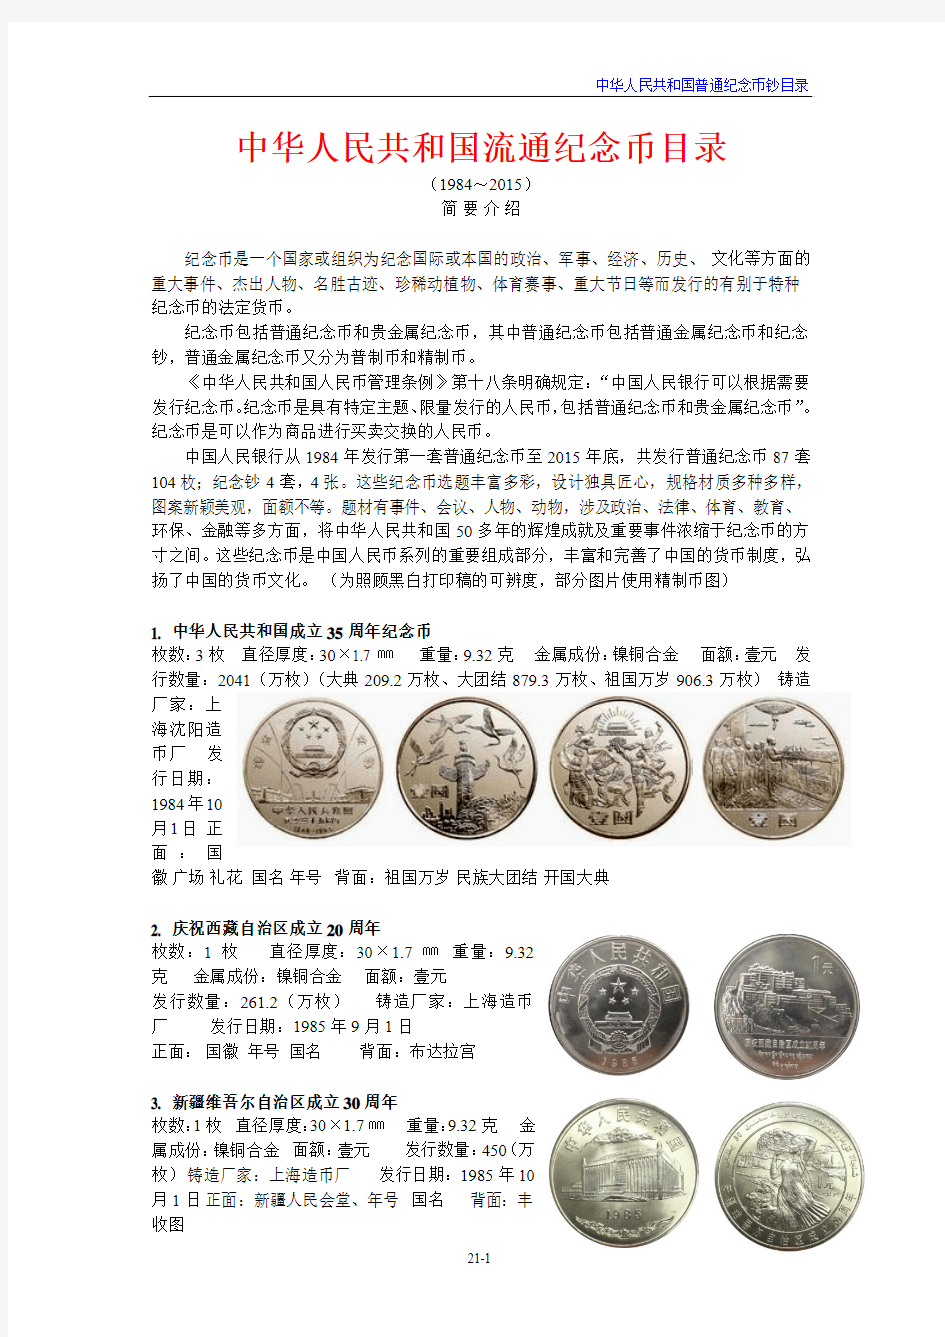 流通纪念币目录(2015)